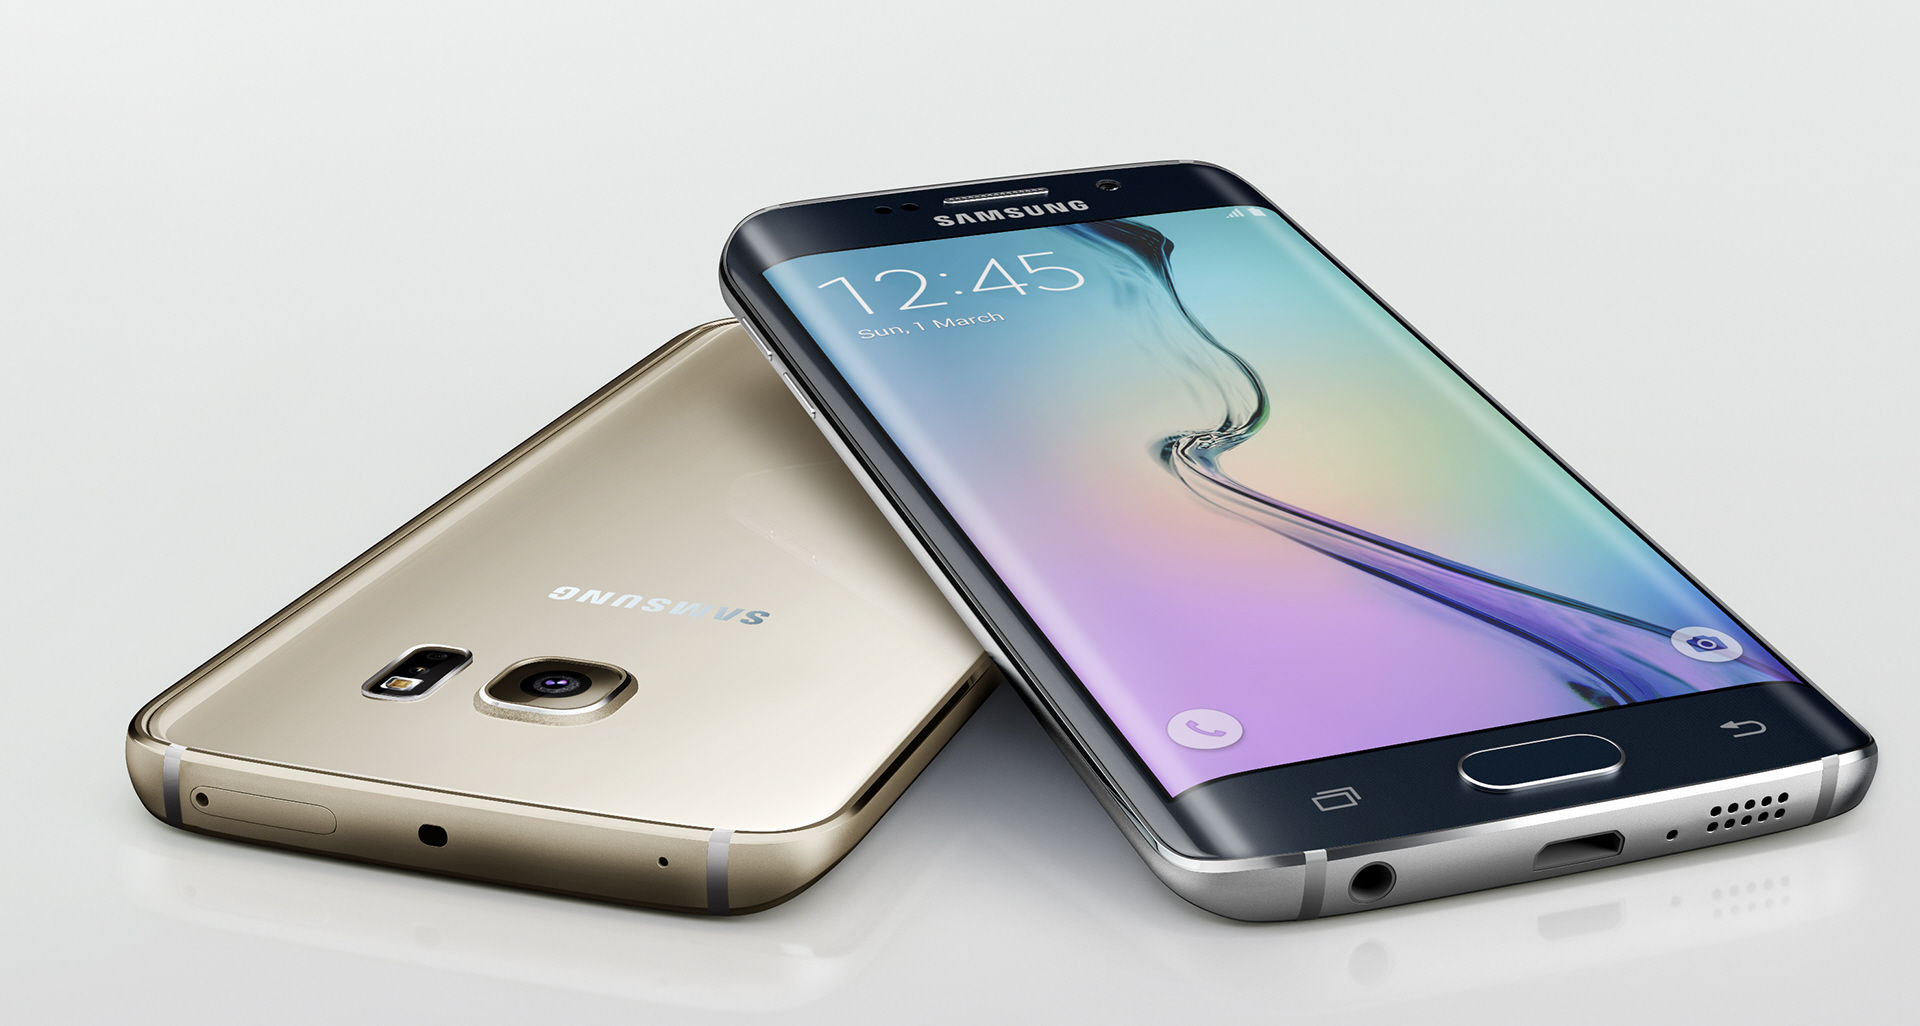 Negyedmillió forint lesz a Samsung Galaxy S6 edge Plus